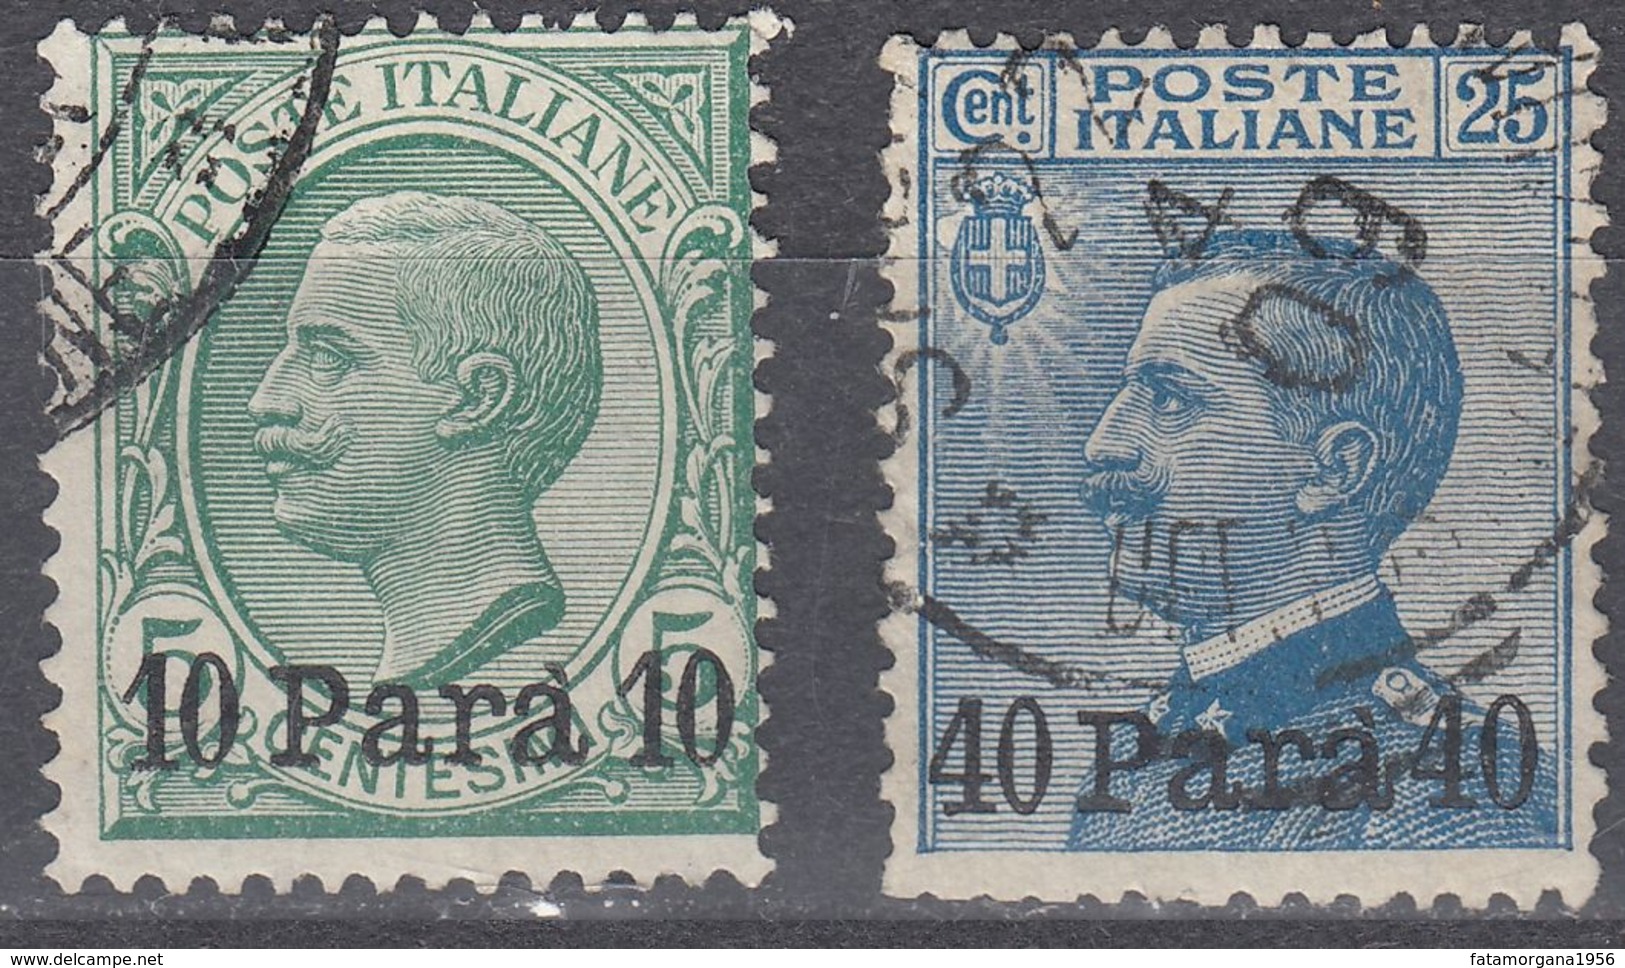 LEVANTE UFFICIO ITALIANO IN ALBANIA - 1902 - Lotto Di 2 Valori Usati: Yvert 21 E 23, Come Da Immagine. - Albanie